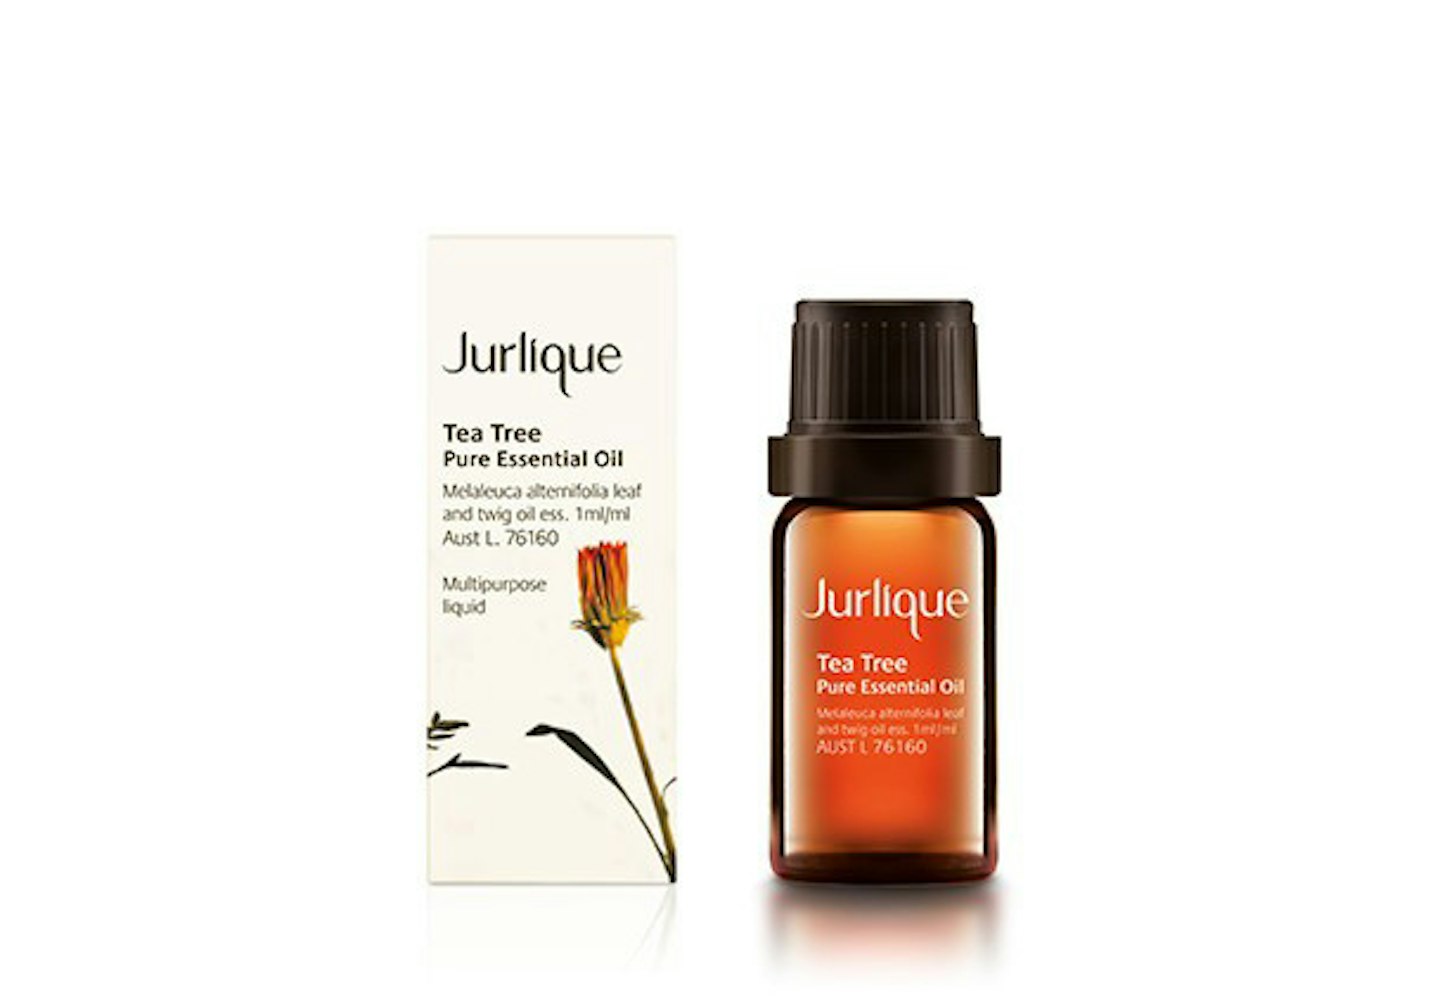 Jurlique Tea Tree Pure Essential Oil, £16